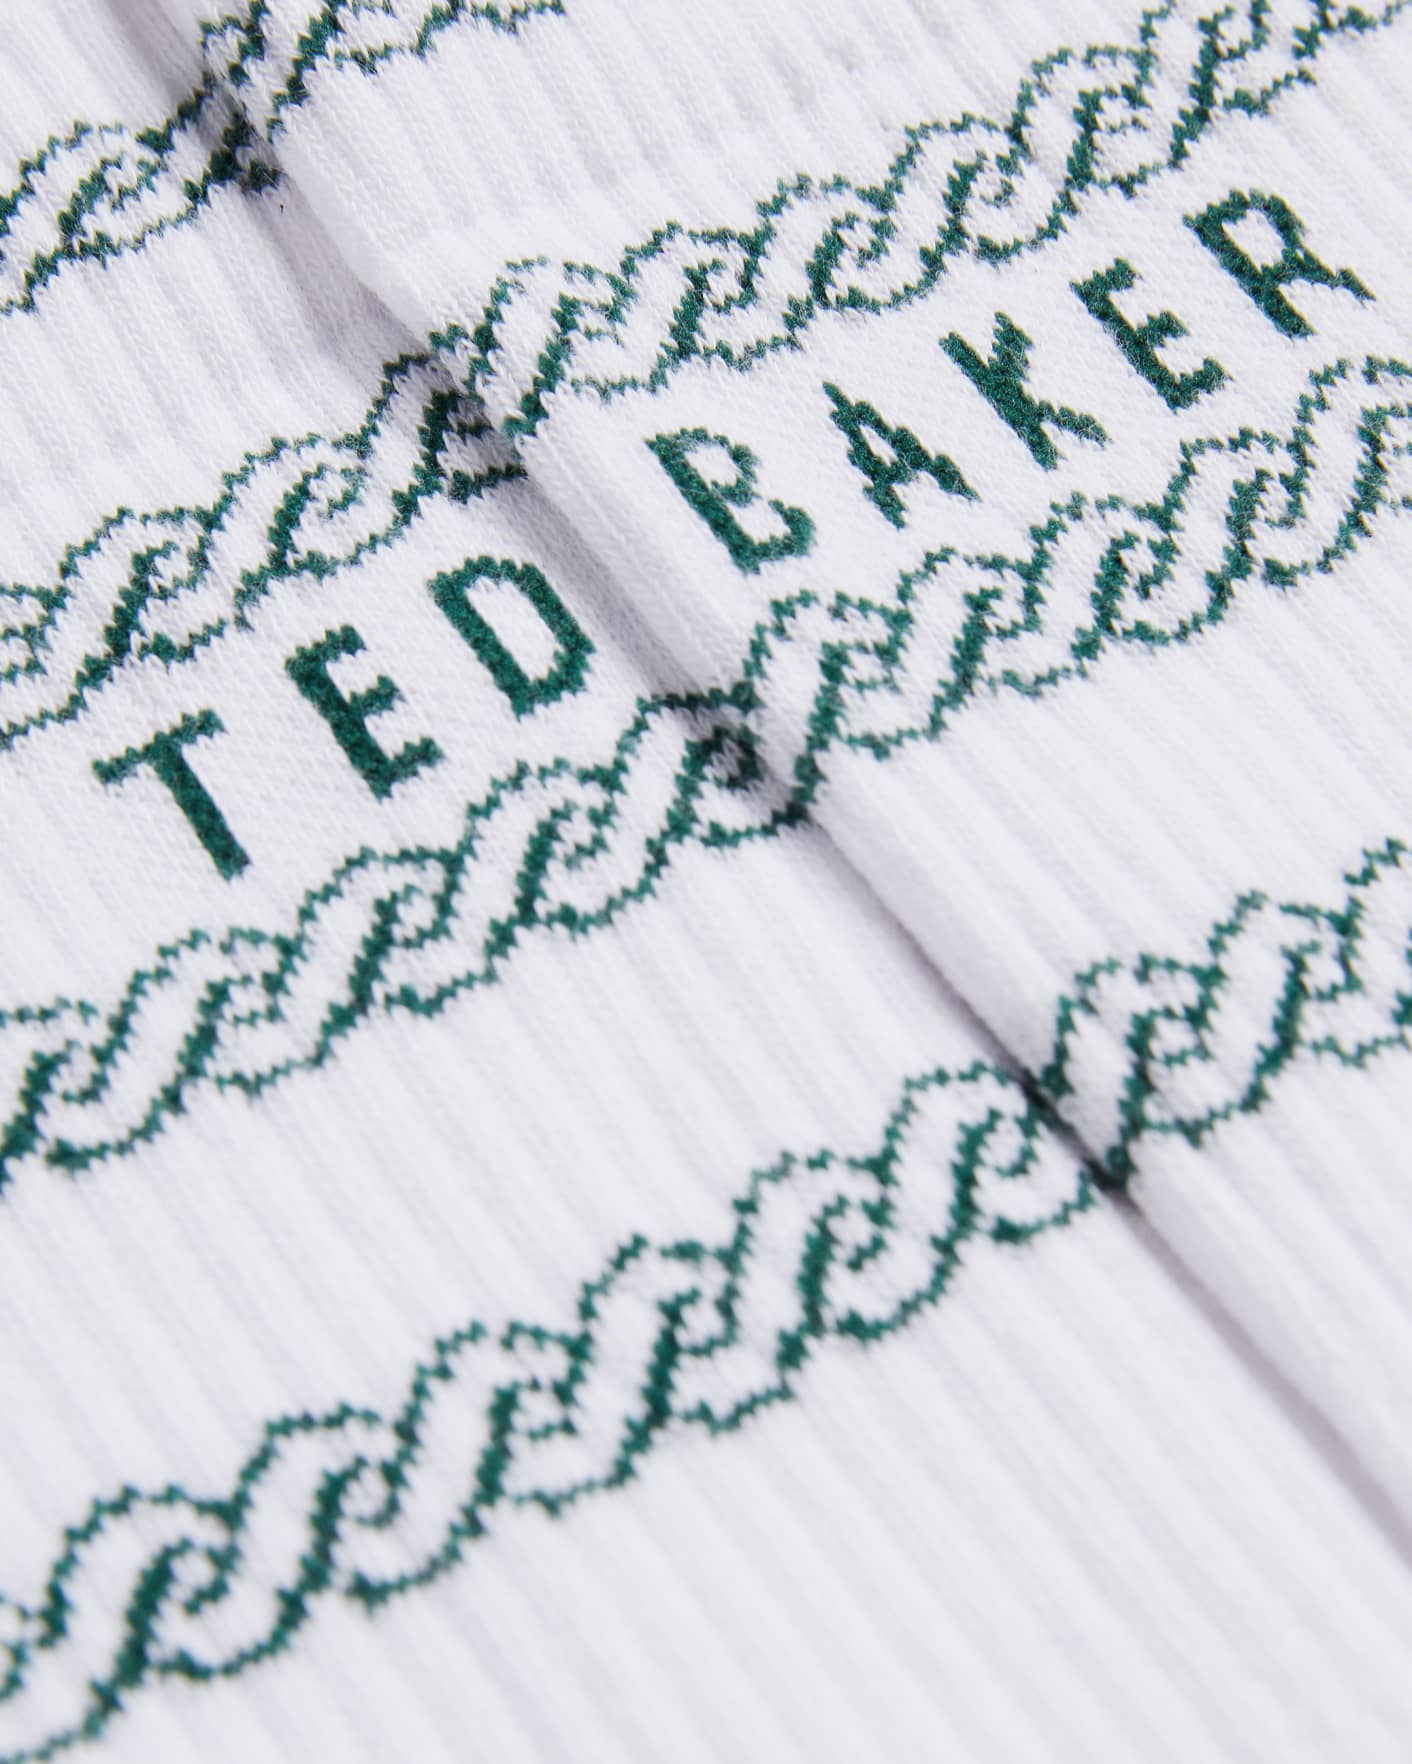 White Branded Chain Socks Ted Baker